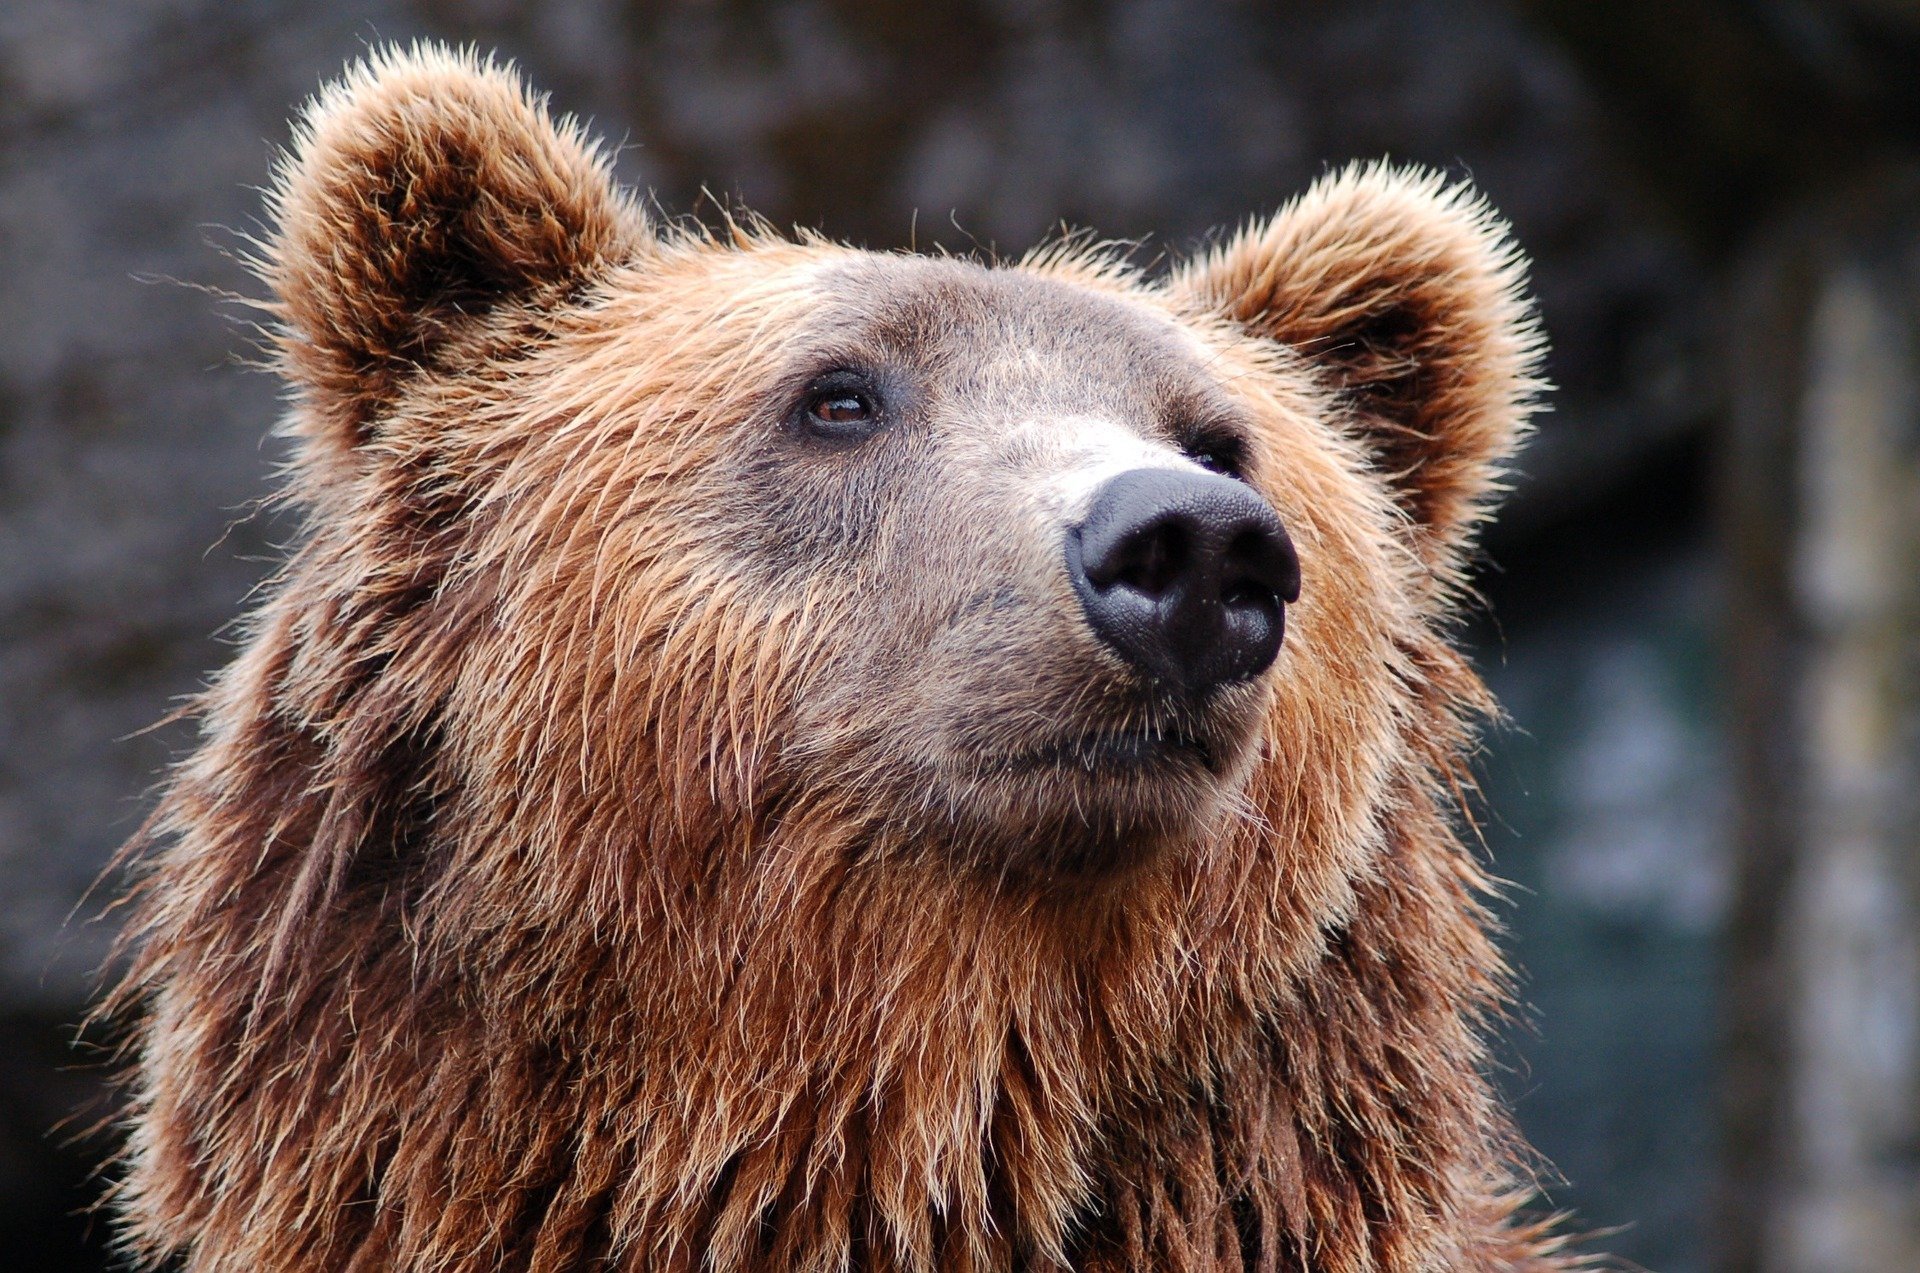 Un bărbat s-a luptat cu un urs grizzly timp de o săptămână. Cum a scăpat acesta